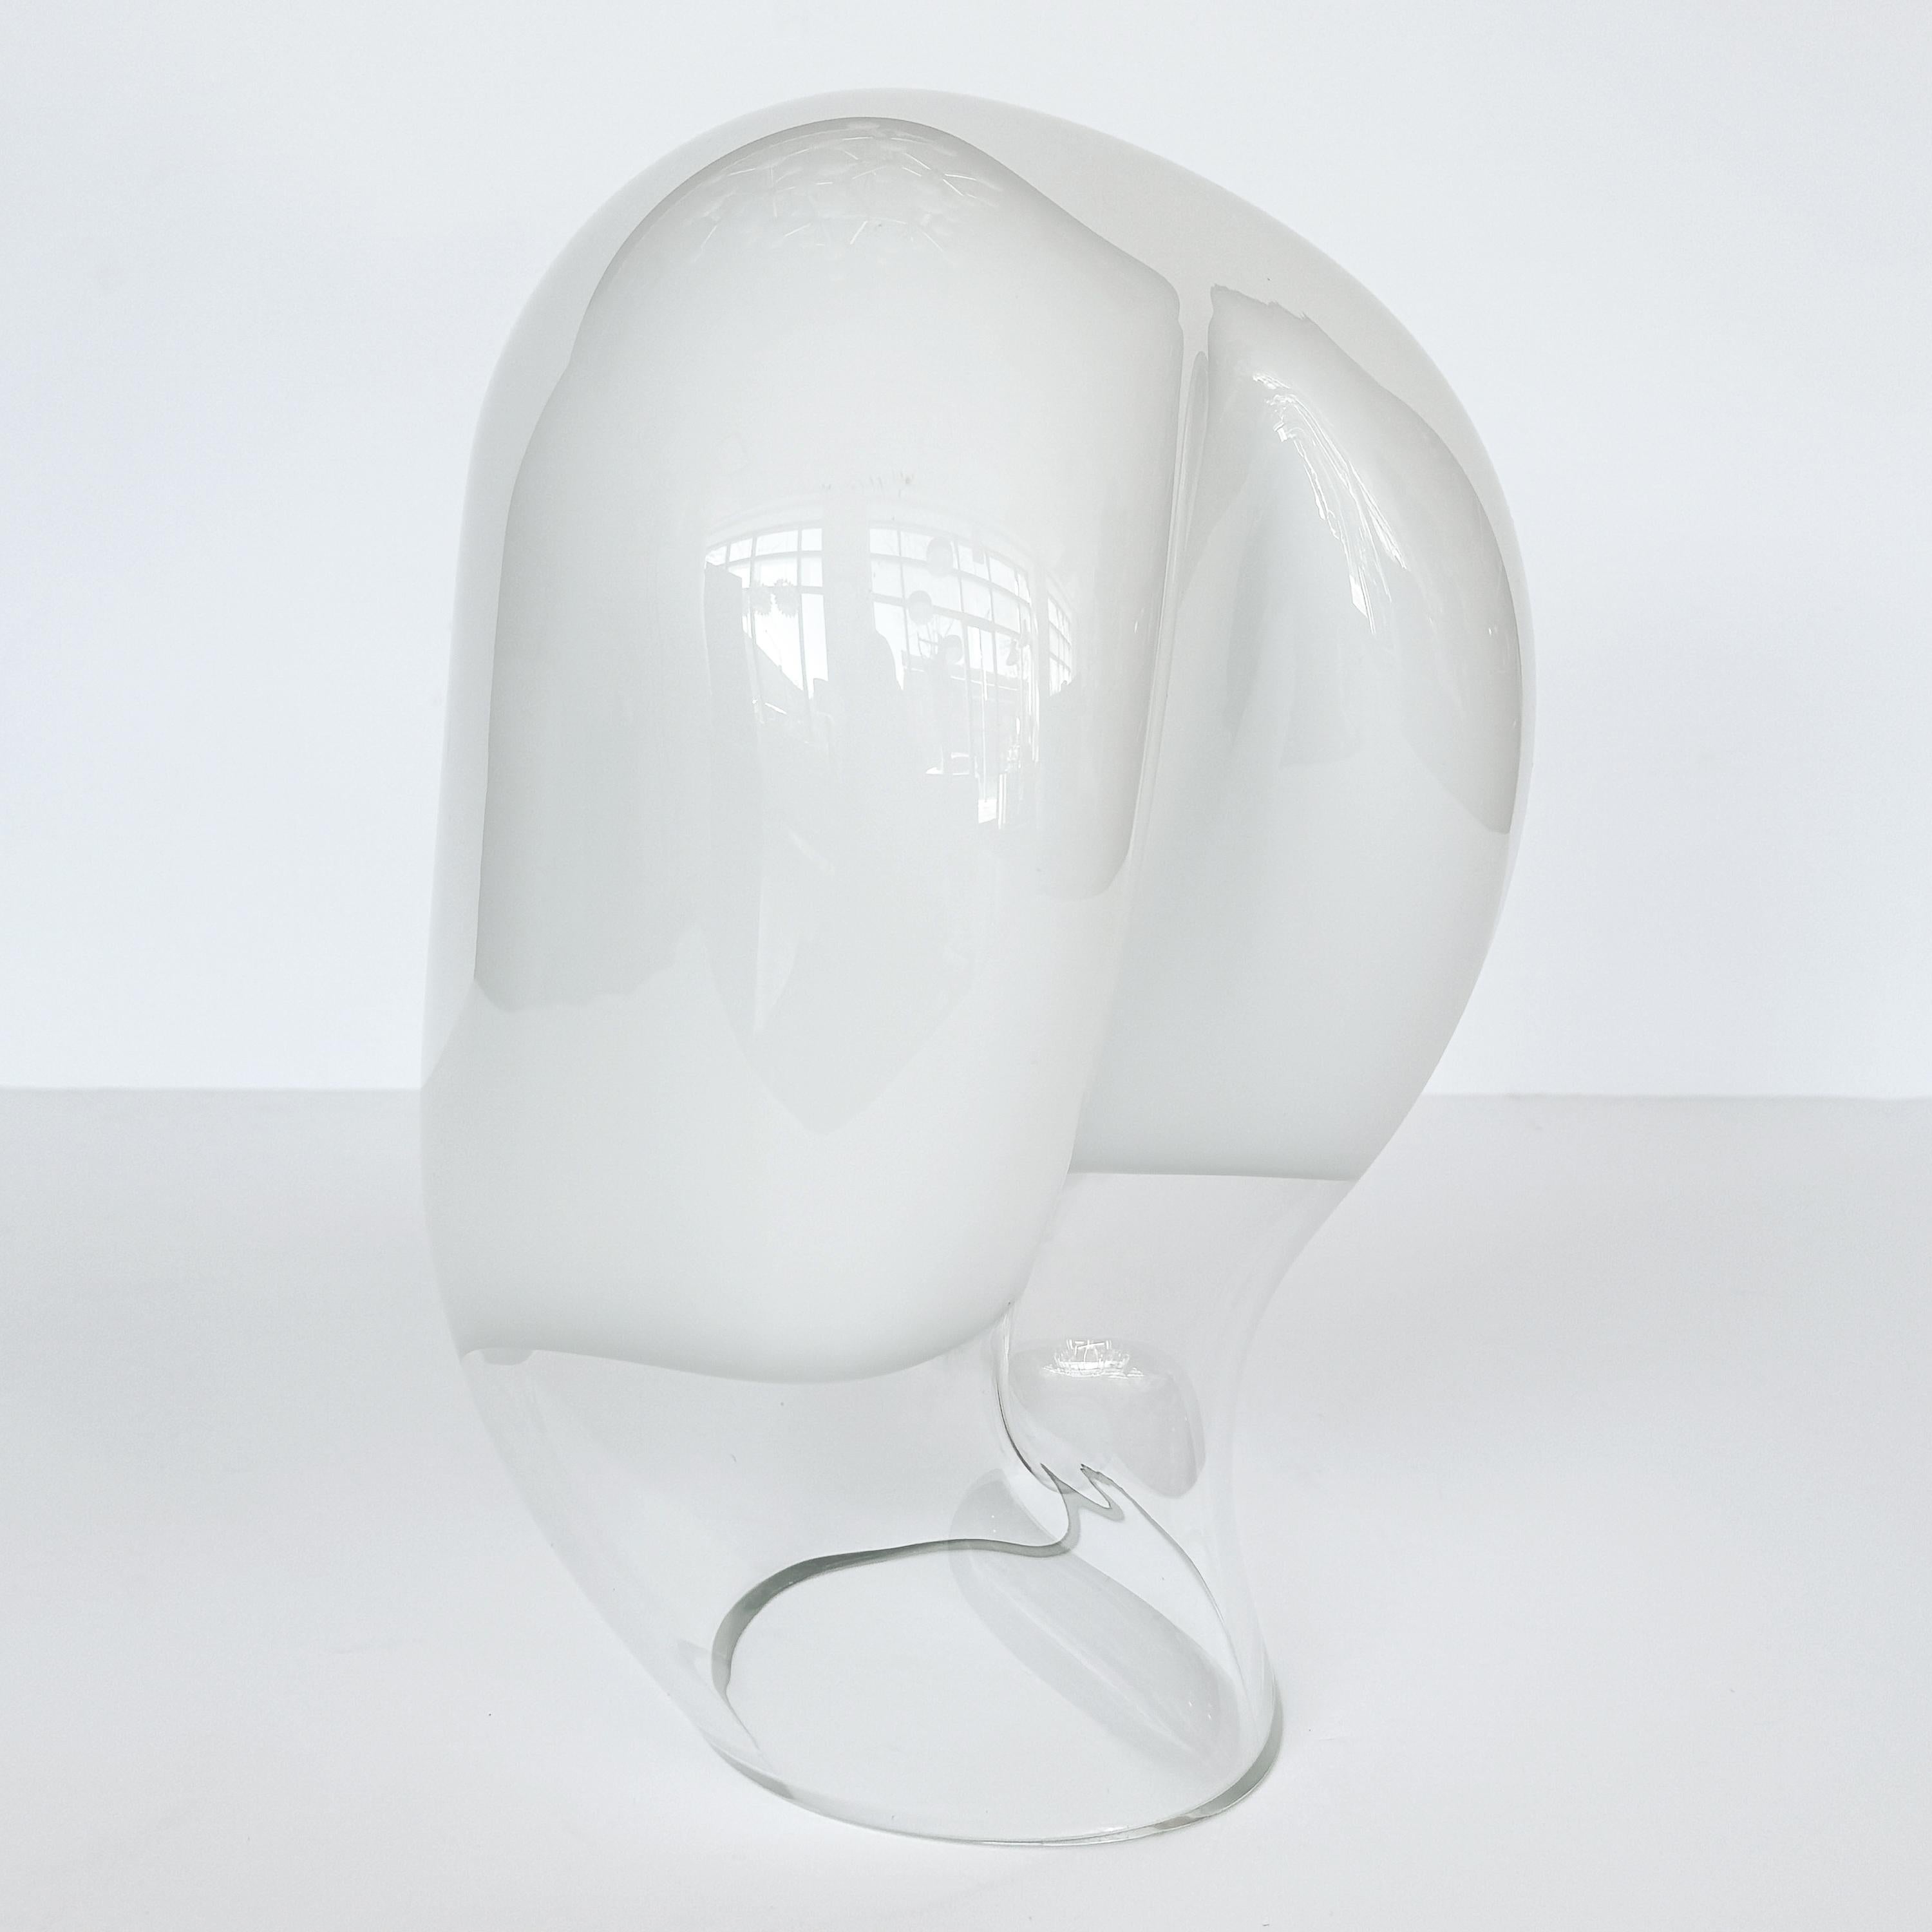 Vistosi Zaghetto Table Lamp Model L282 by Gino Vistosi In Good Condition For Sale In Chicago, IL